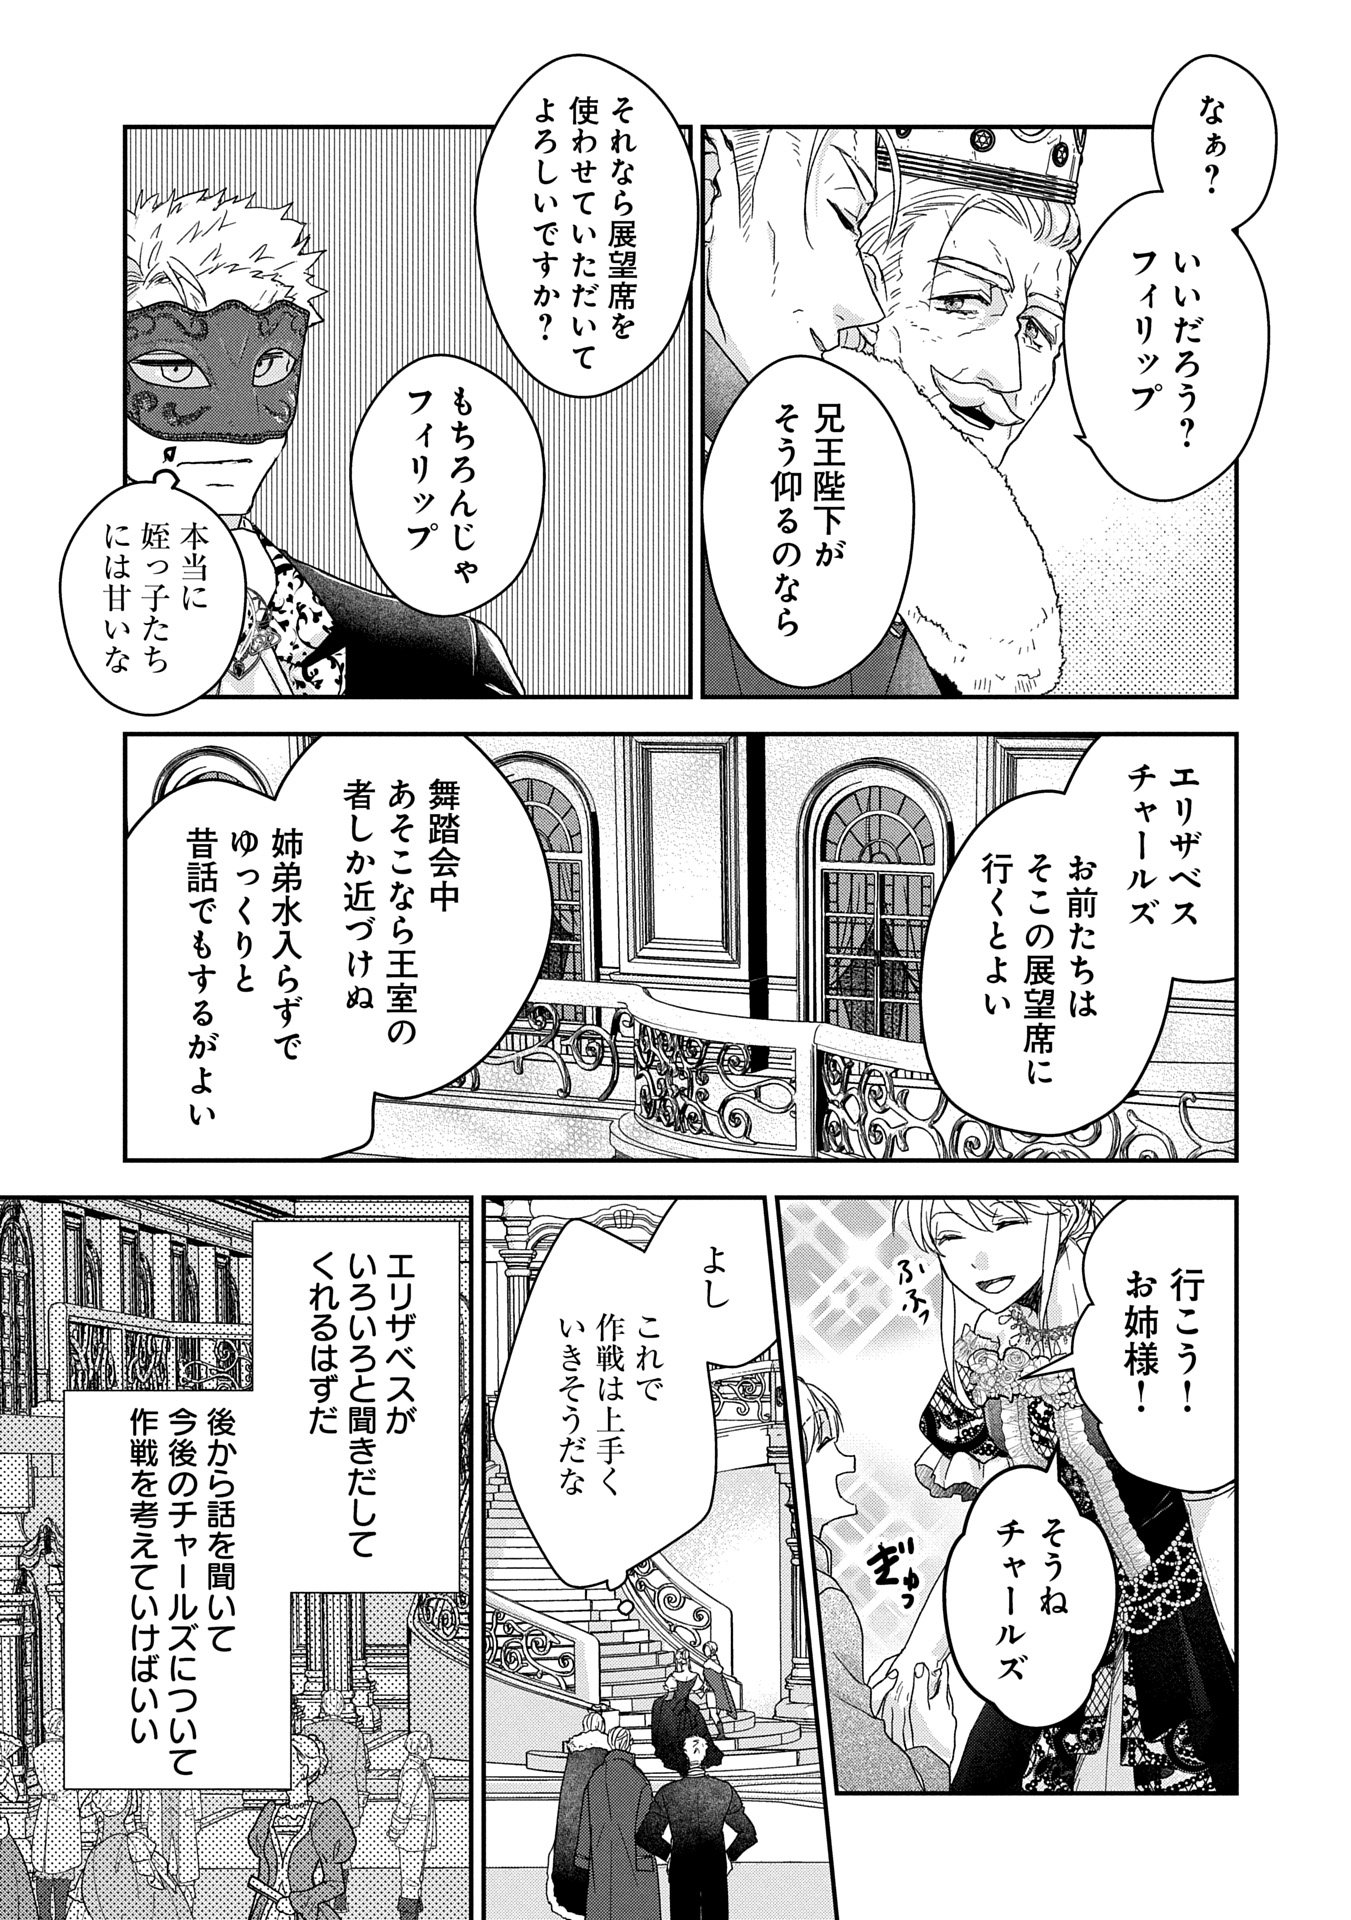 Senki to Yobareta Otoko, Puke ni Ansatsu Saretar Musume wo Hiroi, Issho ni Slow Life wo Hajimeru - Chapter 28.2 - Page 11